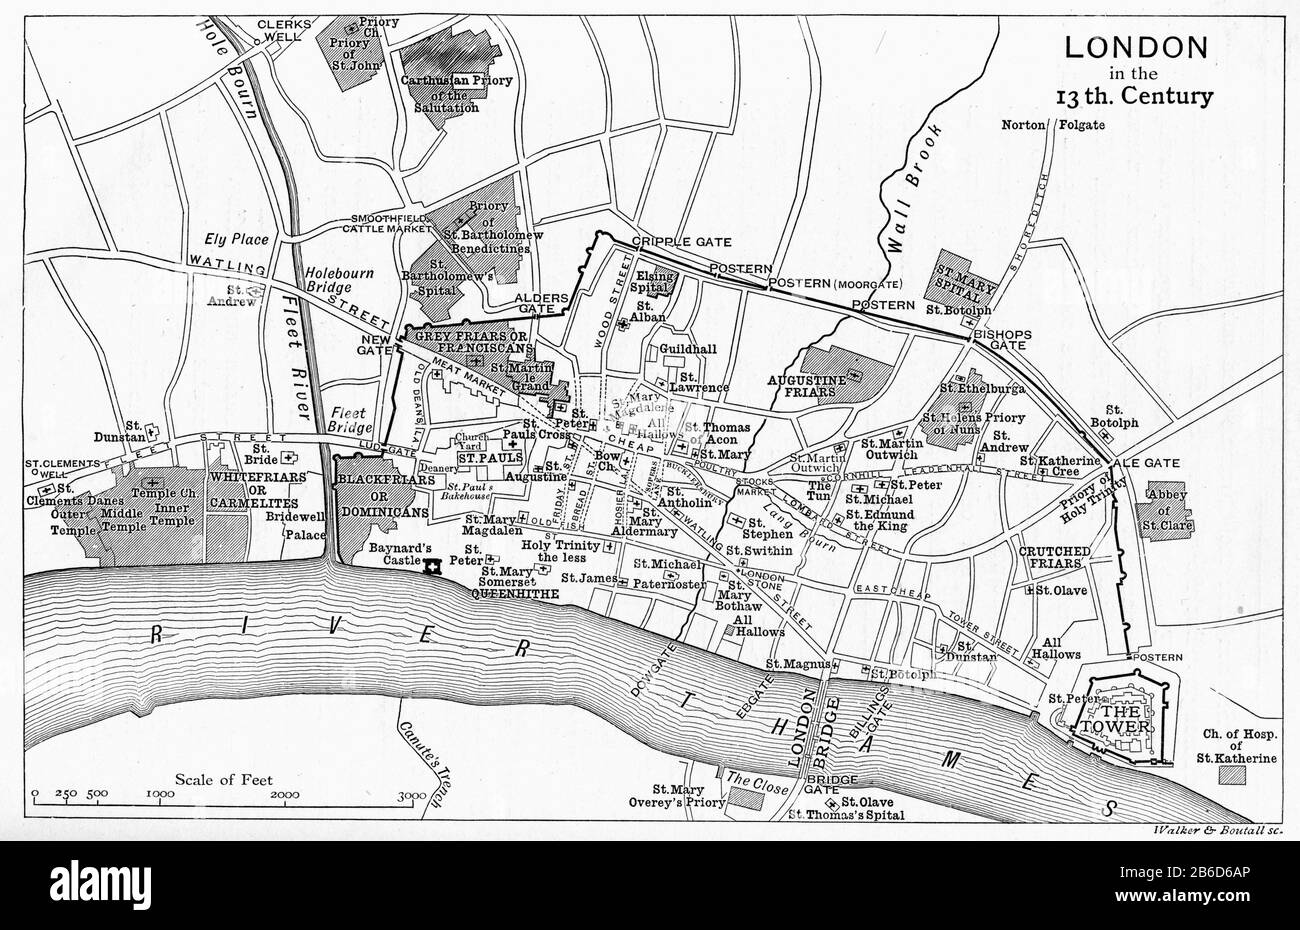 Eine Karte von London im 13. Jahrhundert. Im Mittelalter war Westminster eine kleine Stadt am Fluss von der City of London. Ab dem 13. Jahrhundert wuchs London in zwei verschiedenen Teilen auf. Westminster wurde zur königlichen Hauptstadt und zum Regierungszentrum, während die City of London zum Zentrum von Handel und Handel wurde, eine Unterscheidung, die bis heute offensichtlich ist. Stockfoto